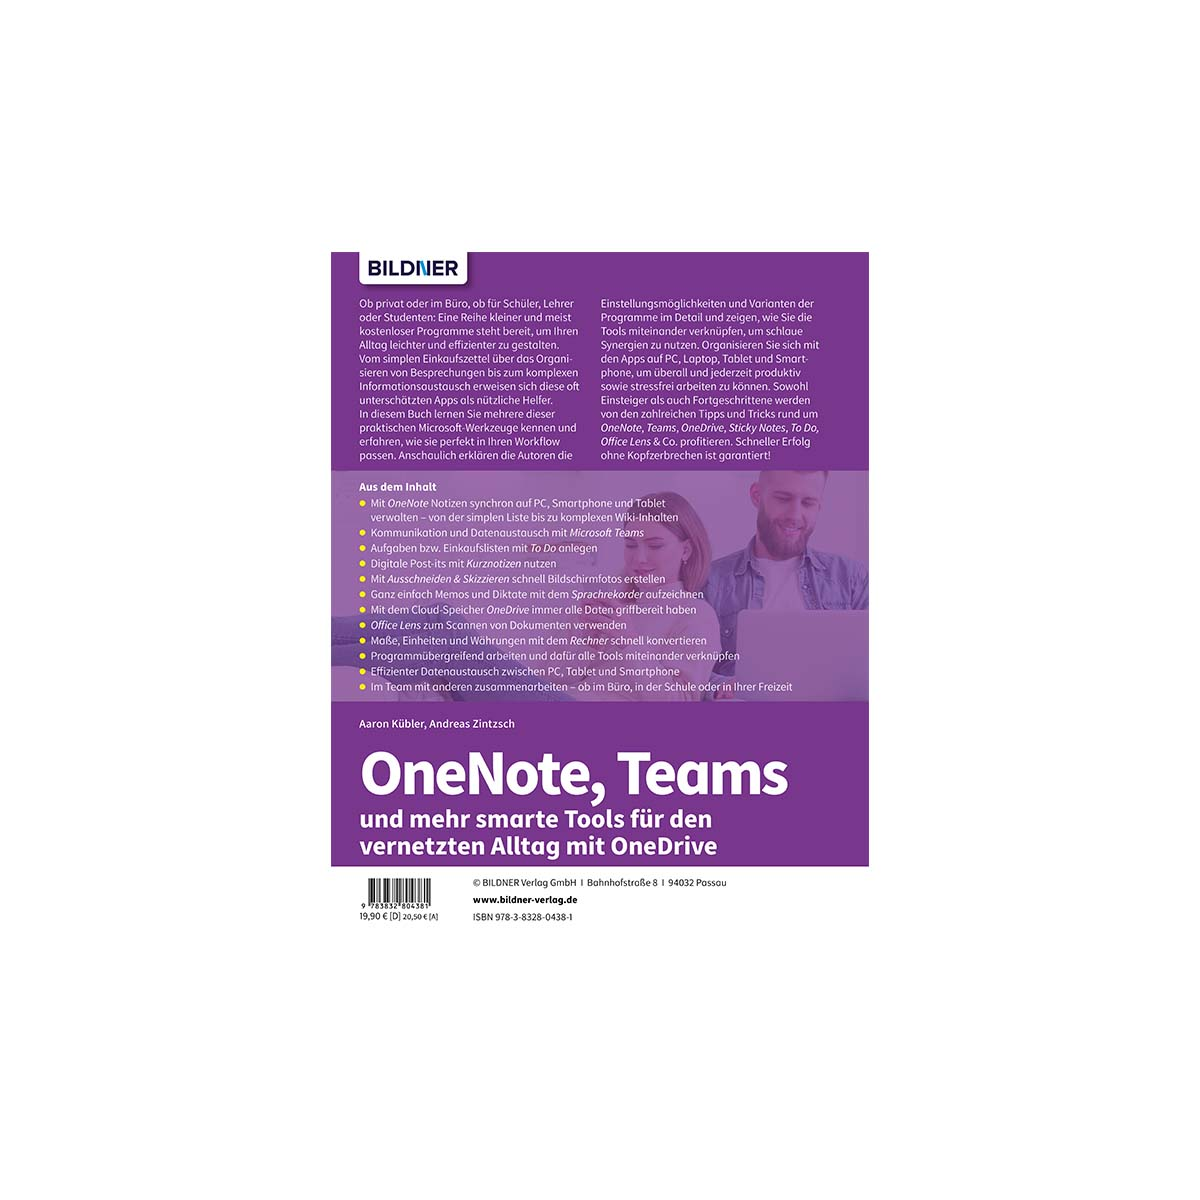 OneNote, Teams und mehr smarte vernetzten den für Microsoft-Alltag Tools